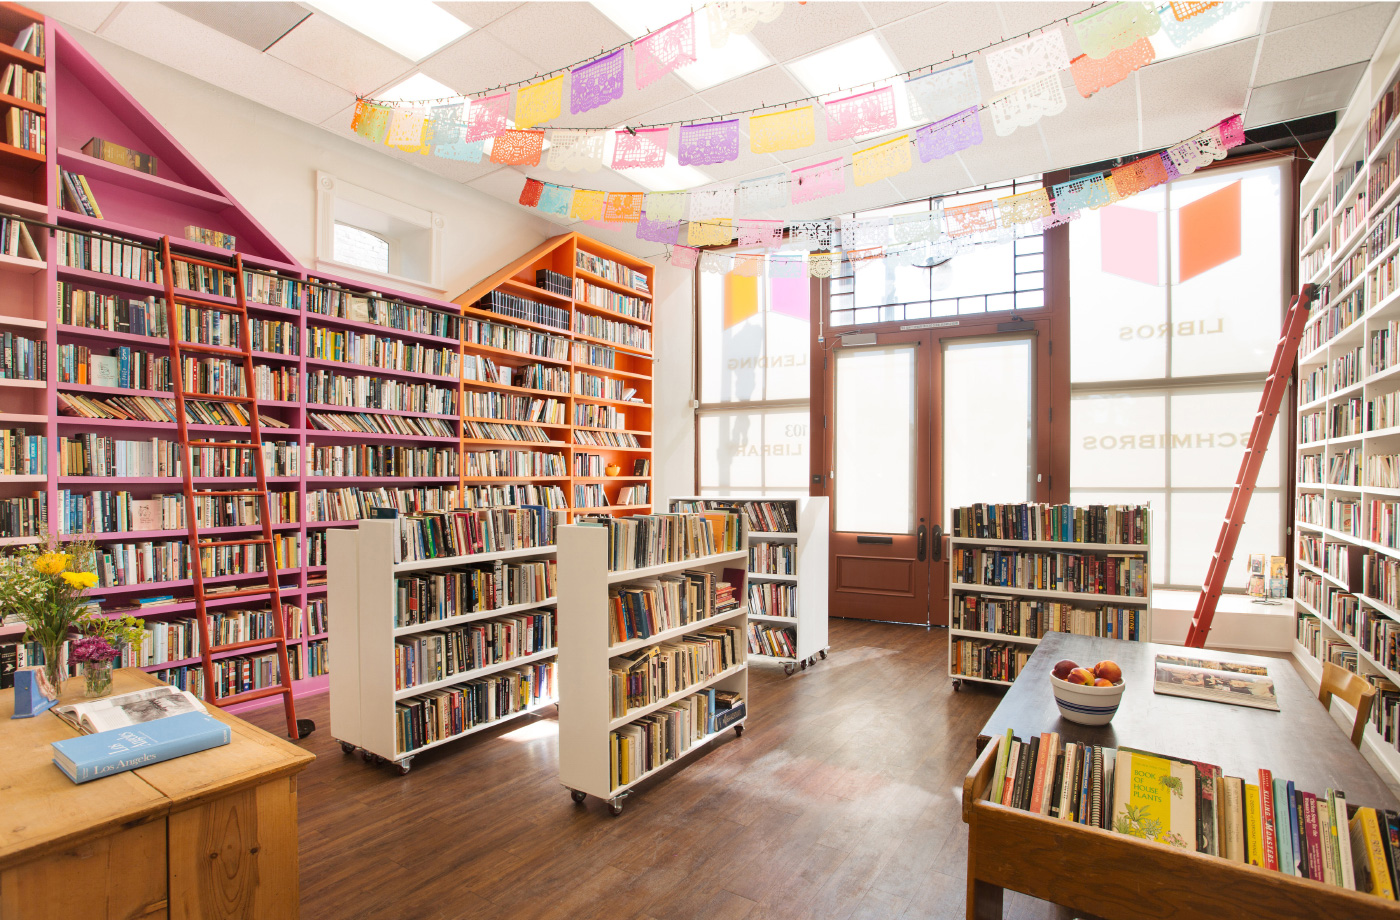 Interior of Libros Shmibros, a colorful book store